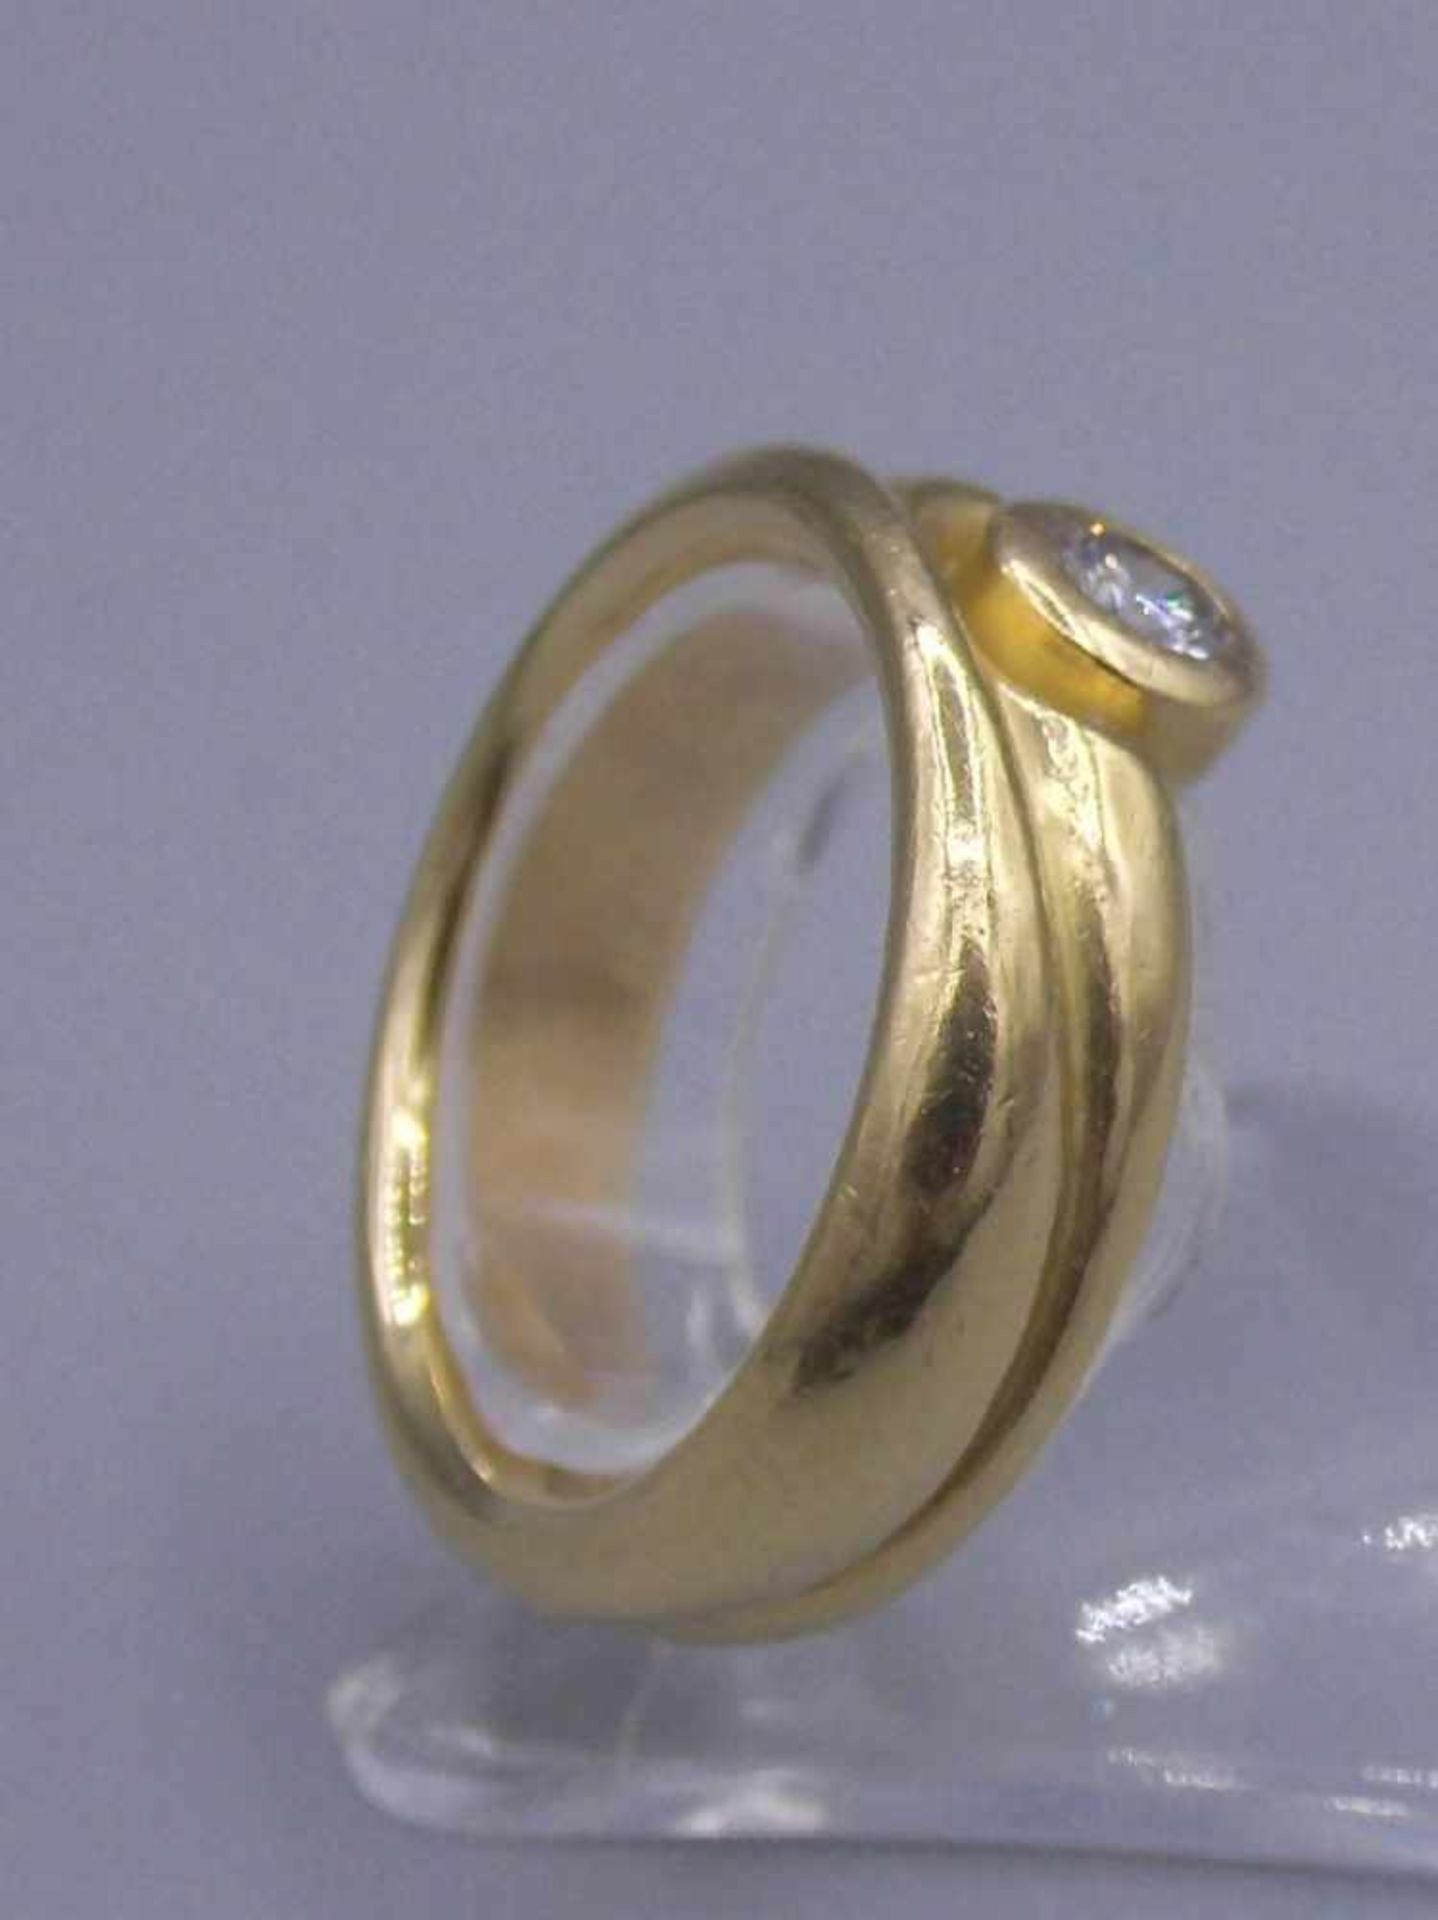 RING, 750er Gelbgold (12,15 g), besetzt mit einem Brillanten von ca. 0,2 ct.; Ring-Gr. 55/56. - Image 3 of 4